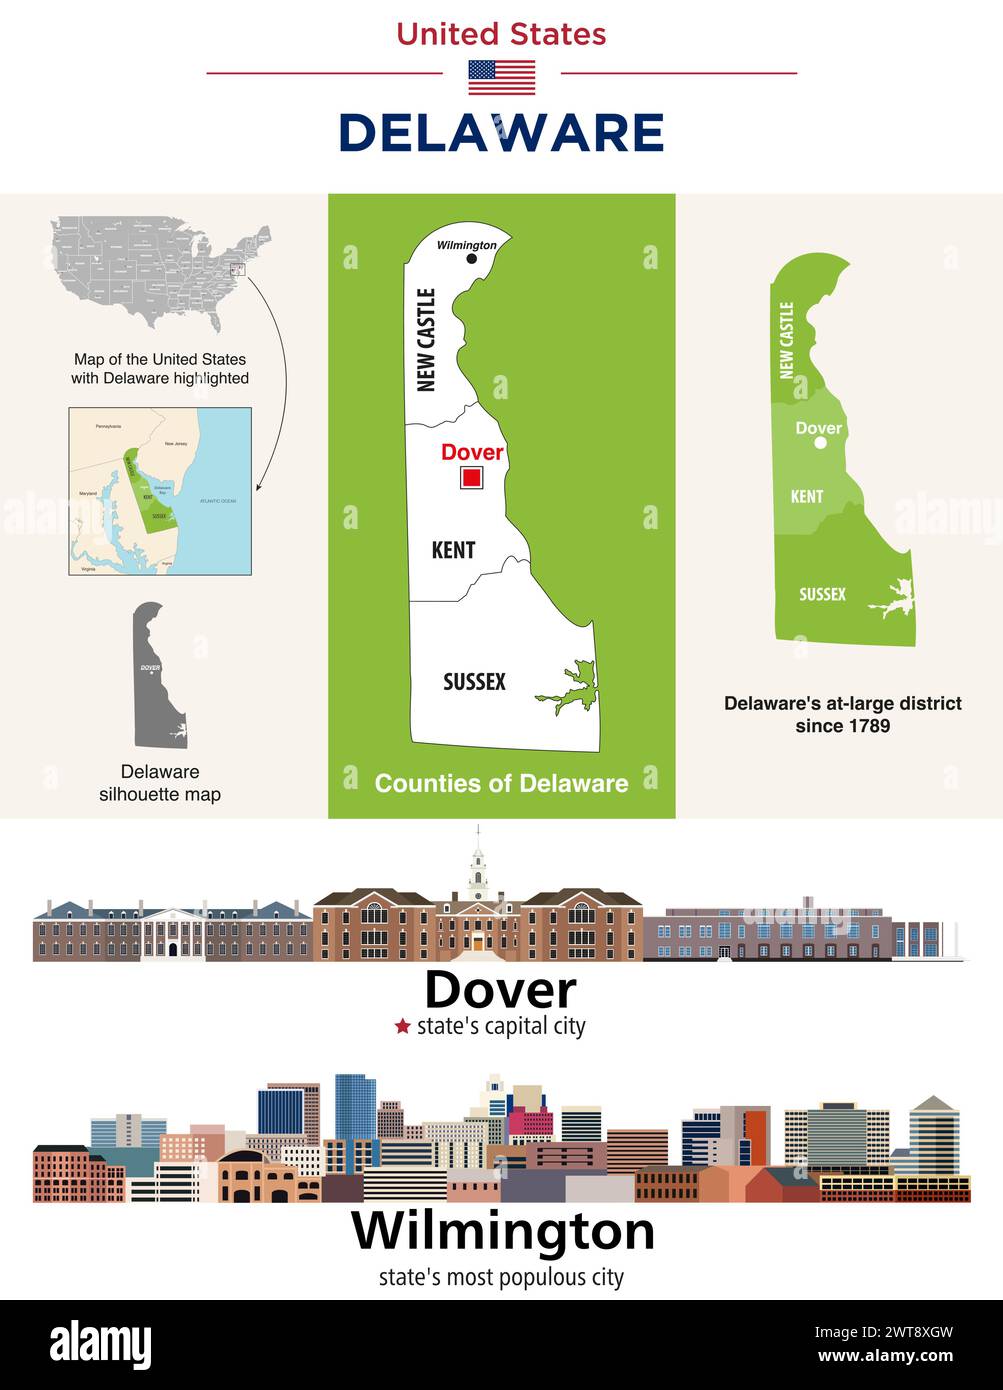 Carte des comtés du Delaware et carte du district at-large du Congrès. Horizon de Douvres (capitale de l'État) et Wilmington (ville la plus peuplée de l'État). Illustration de Vecteur